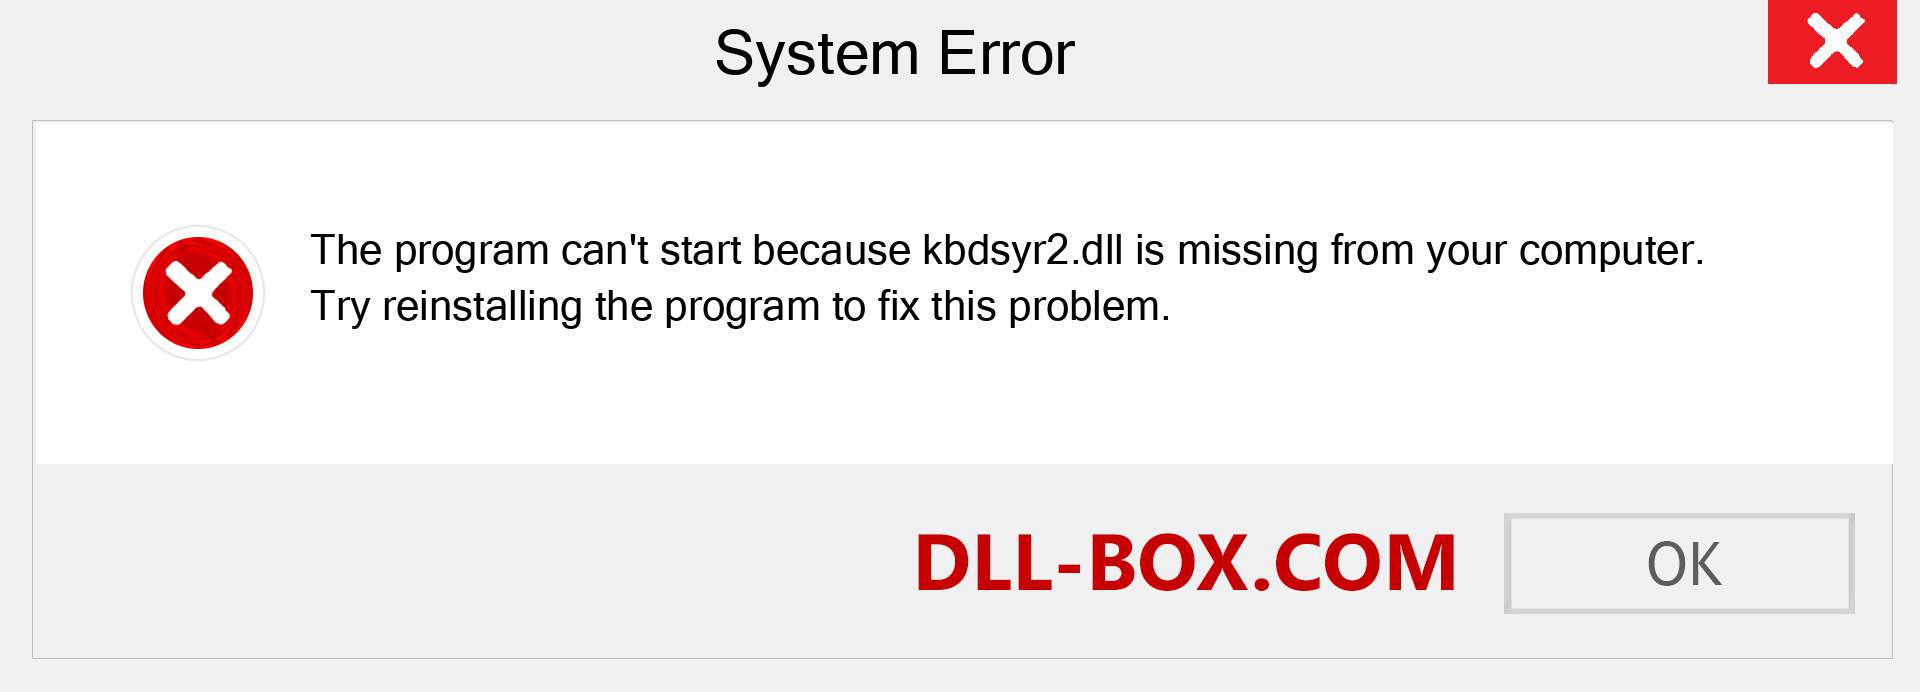  kbdsyr2.dll file is missing?. Download for Windows 7, 8, 10 - Fix  kbdsyr2 dll Missing Error on Windows, photos, images